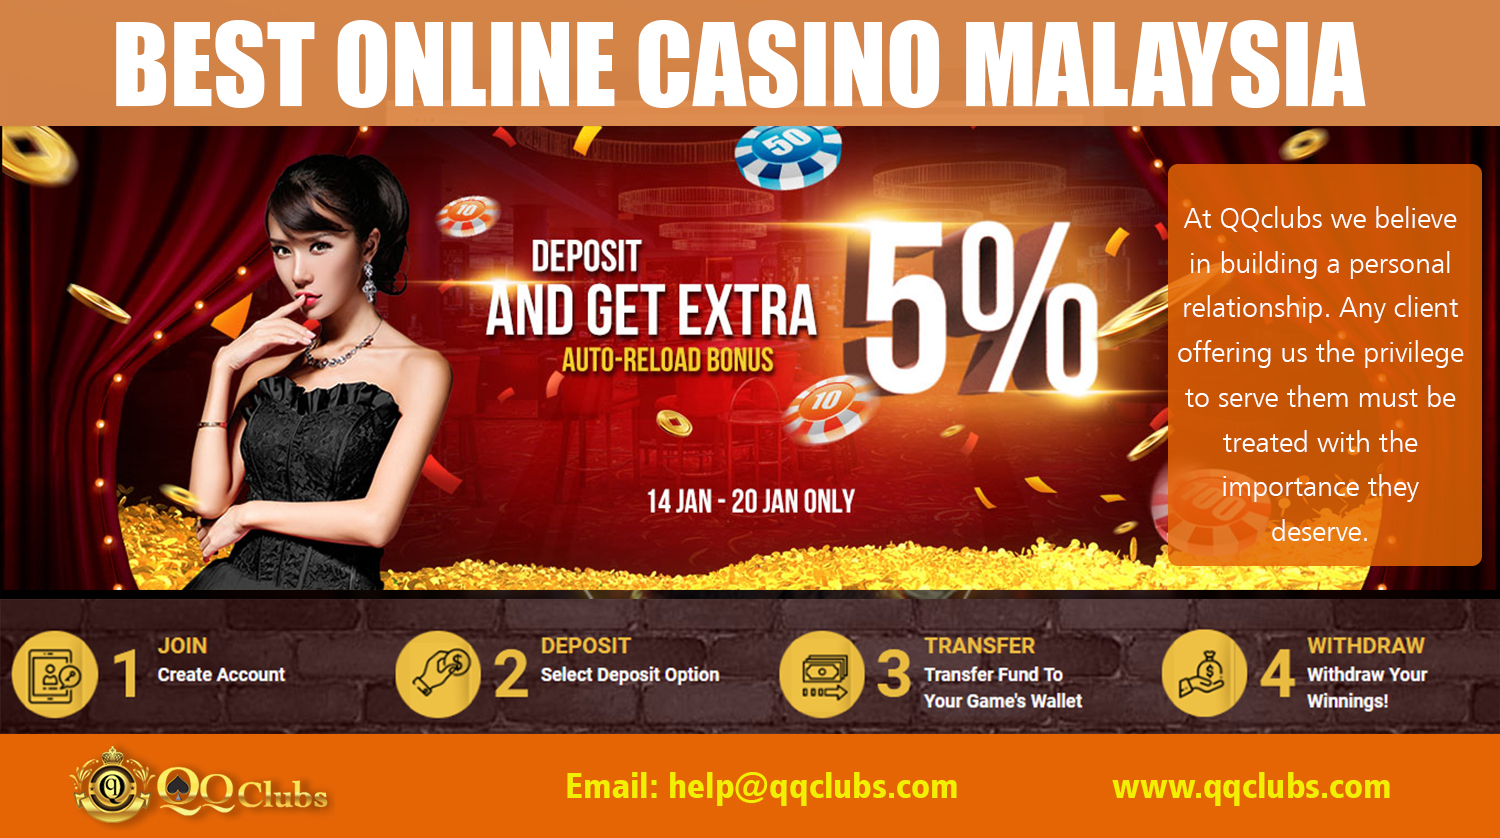 Malaysia casino online free credit 2019 ipb не могу зайти в мостбет что делать